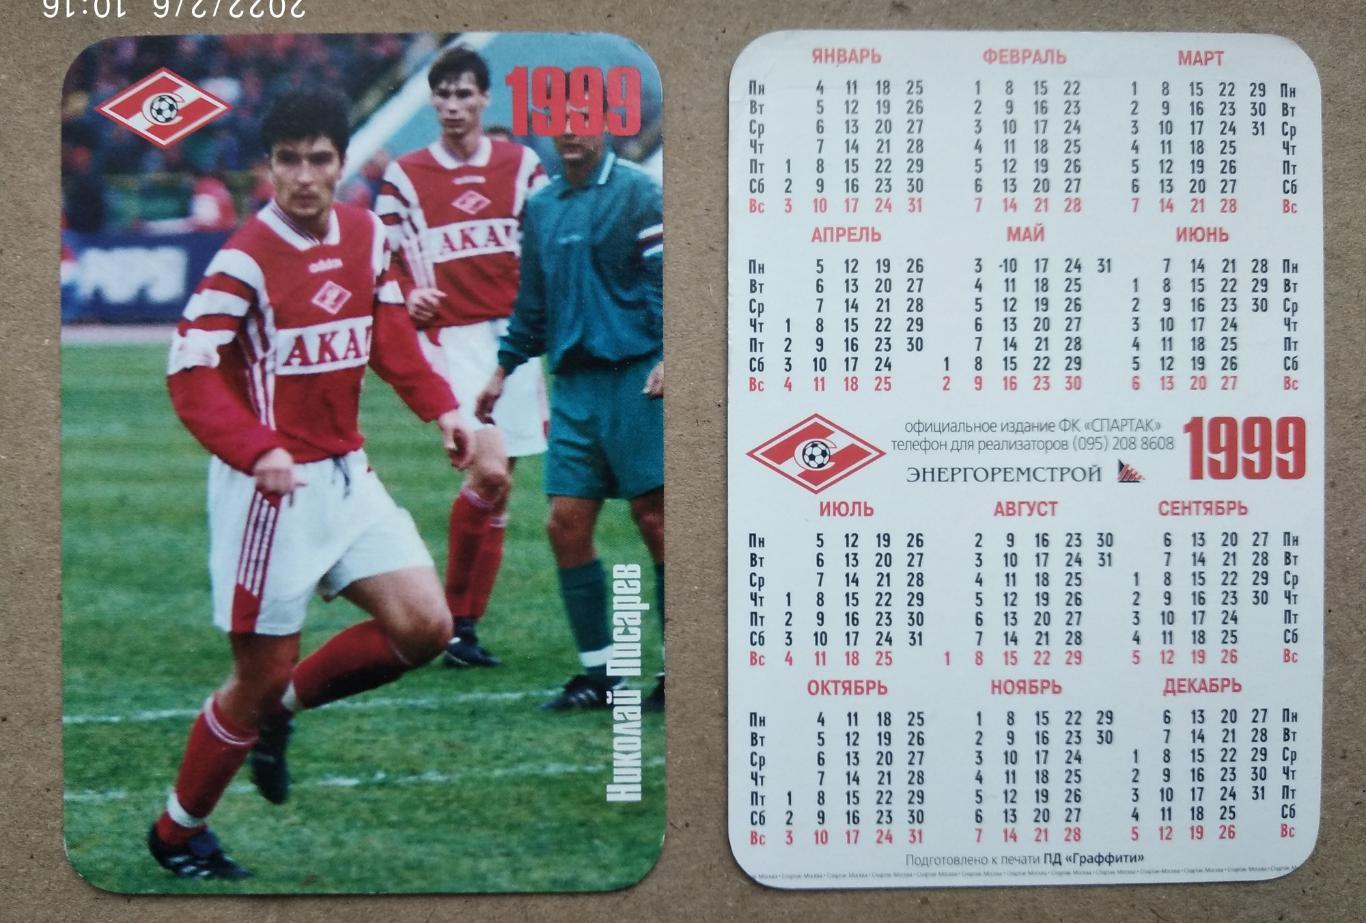 Спартак Москва -Писарев, календарик на 1999 год, официальное издание